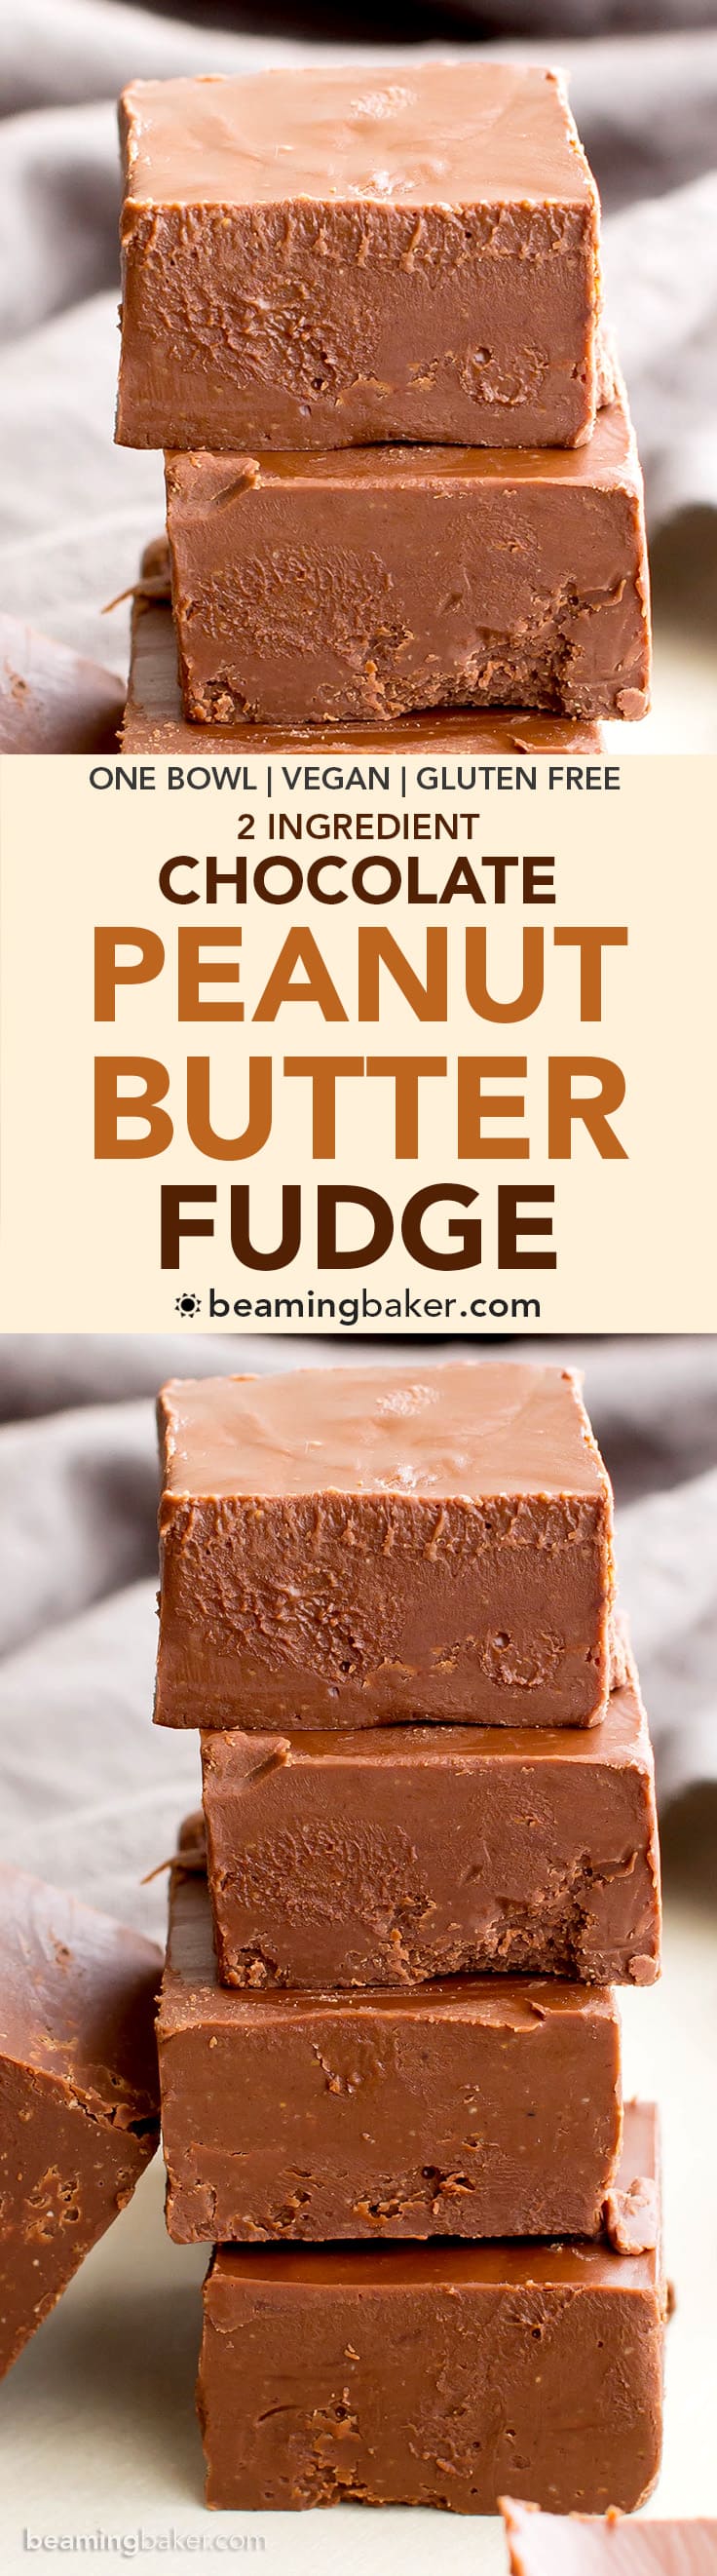 2 Ingredient Vegan Chocolate Peanut Butter Freezer Fudge (V, GF, DF): a super easy recipe for thick, decadent chocolate peanut butter fudge. #Vegan #GlutenFree #DairyFree | BeamingBaker.com